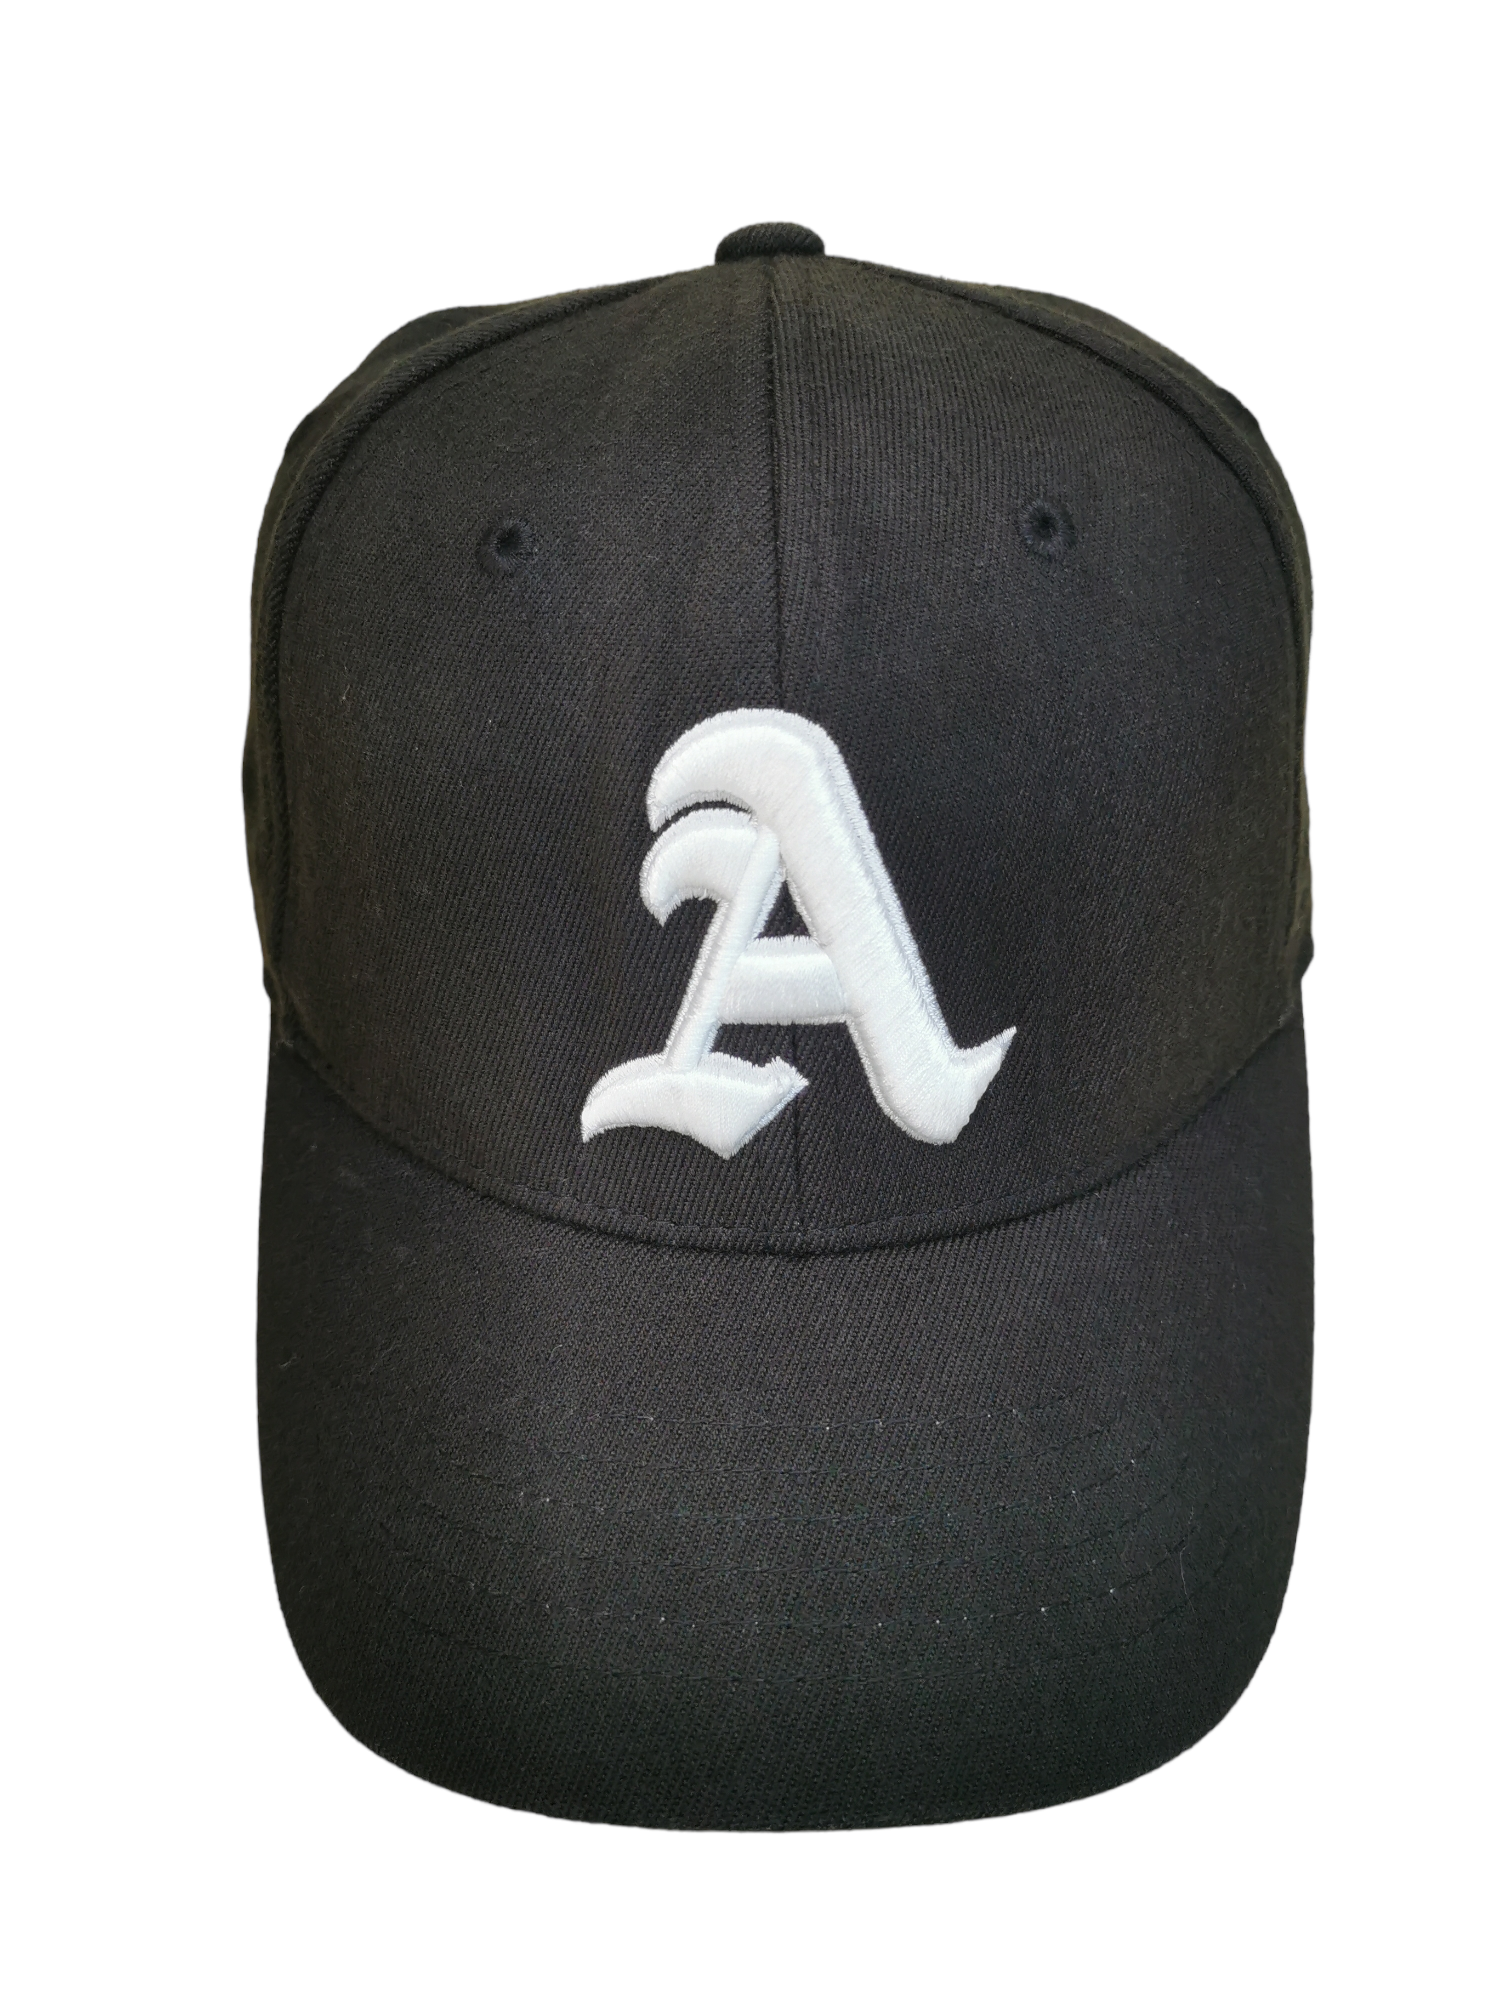 BIRKENSTOCK ARIZONA HAT CAP - 1